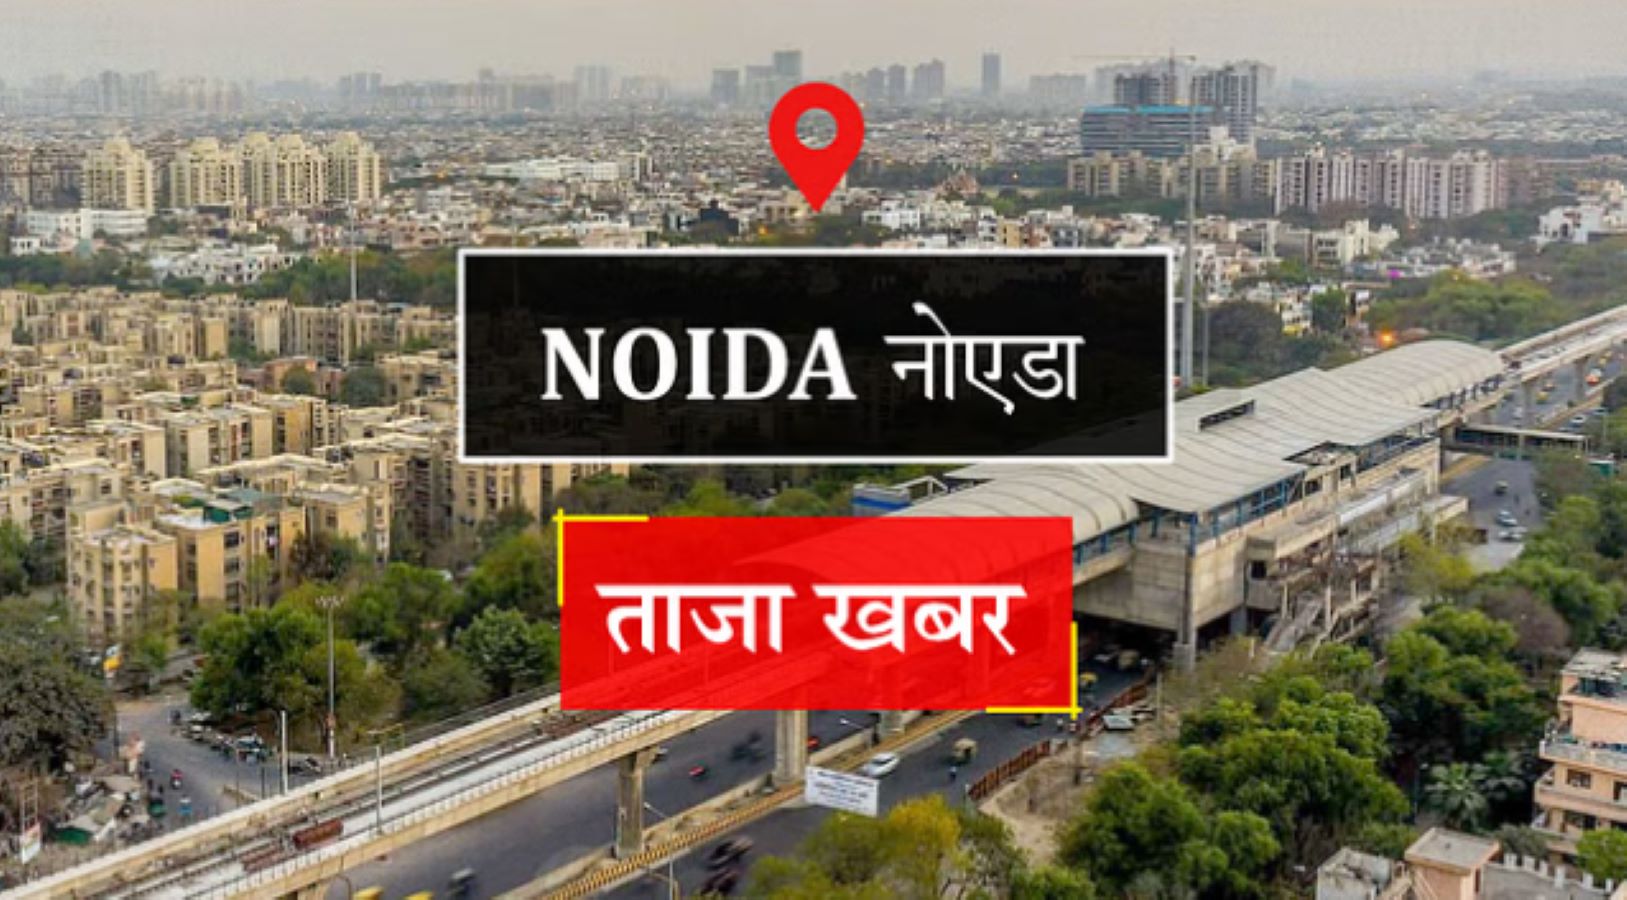 Noida News: नोट उड़ाने वाली चार और कार की हुई शिनाख्त,रील बनाने के लिए किया हंगामा